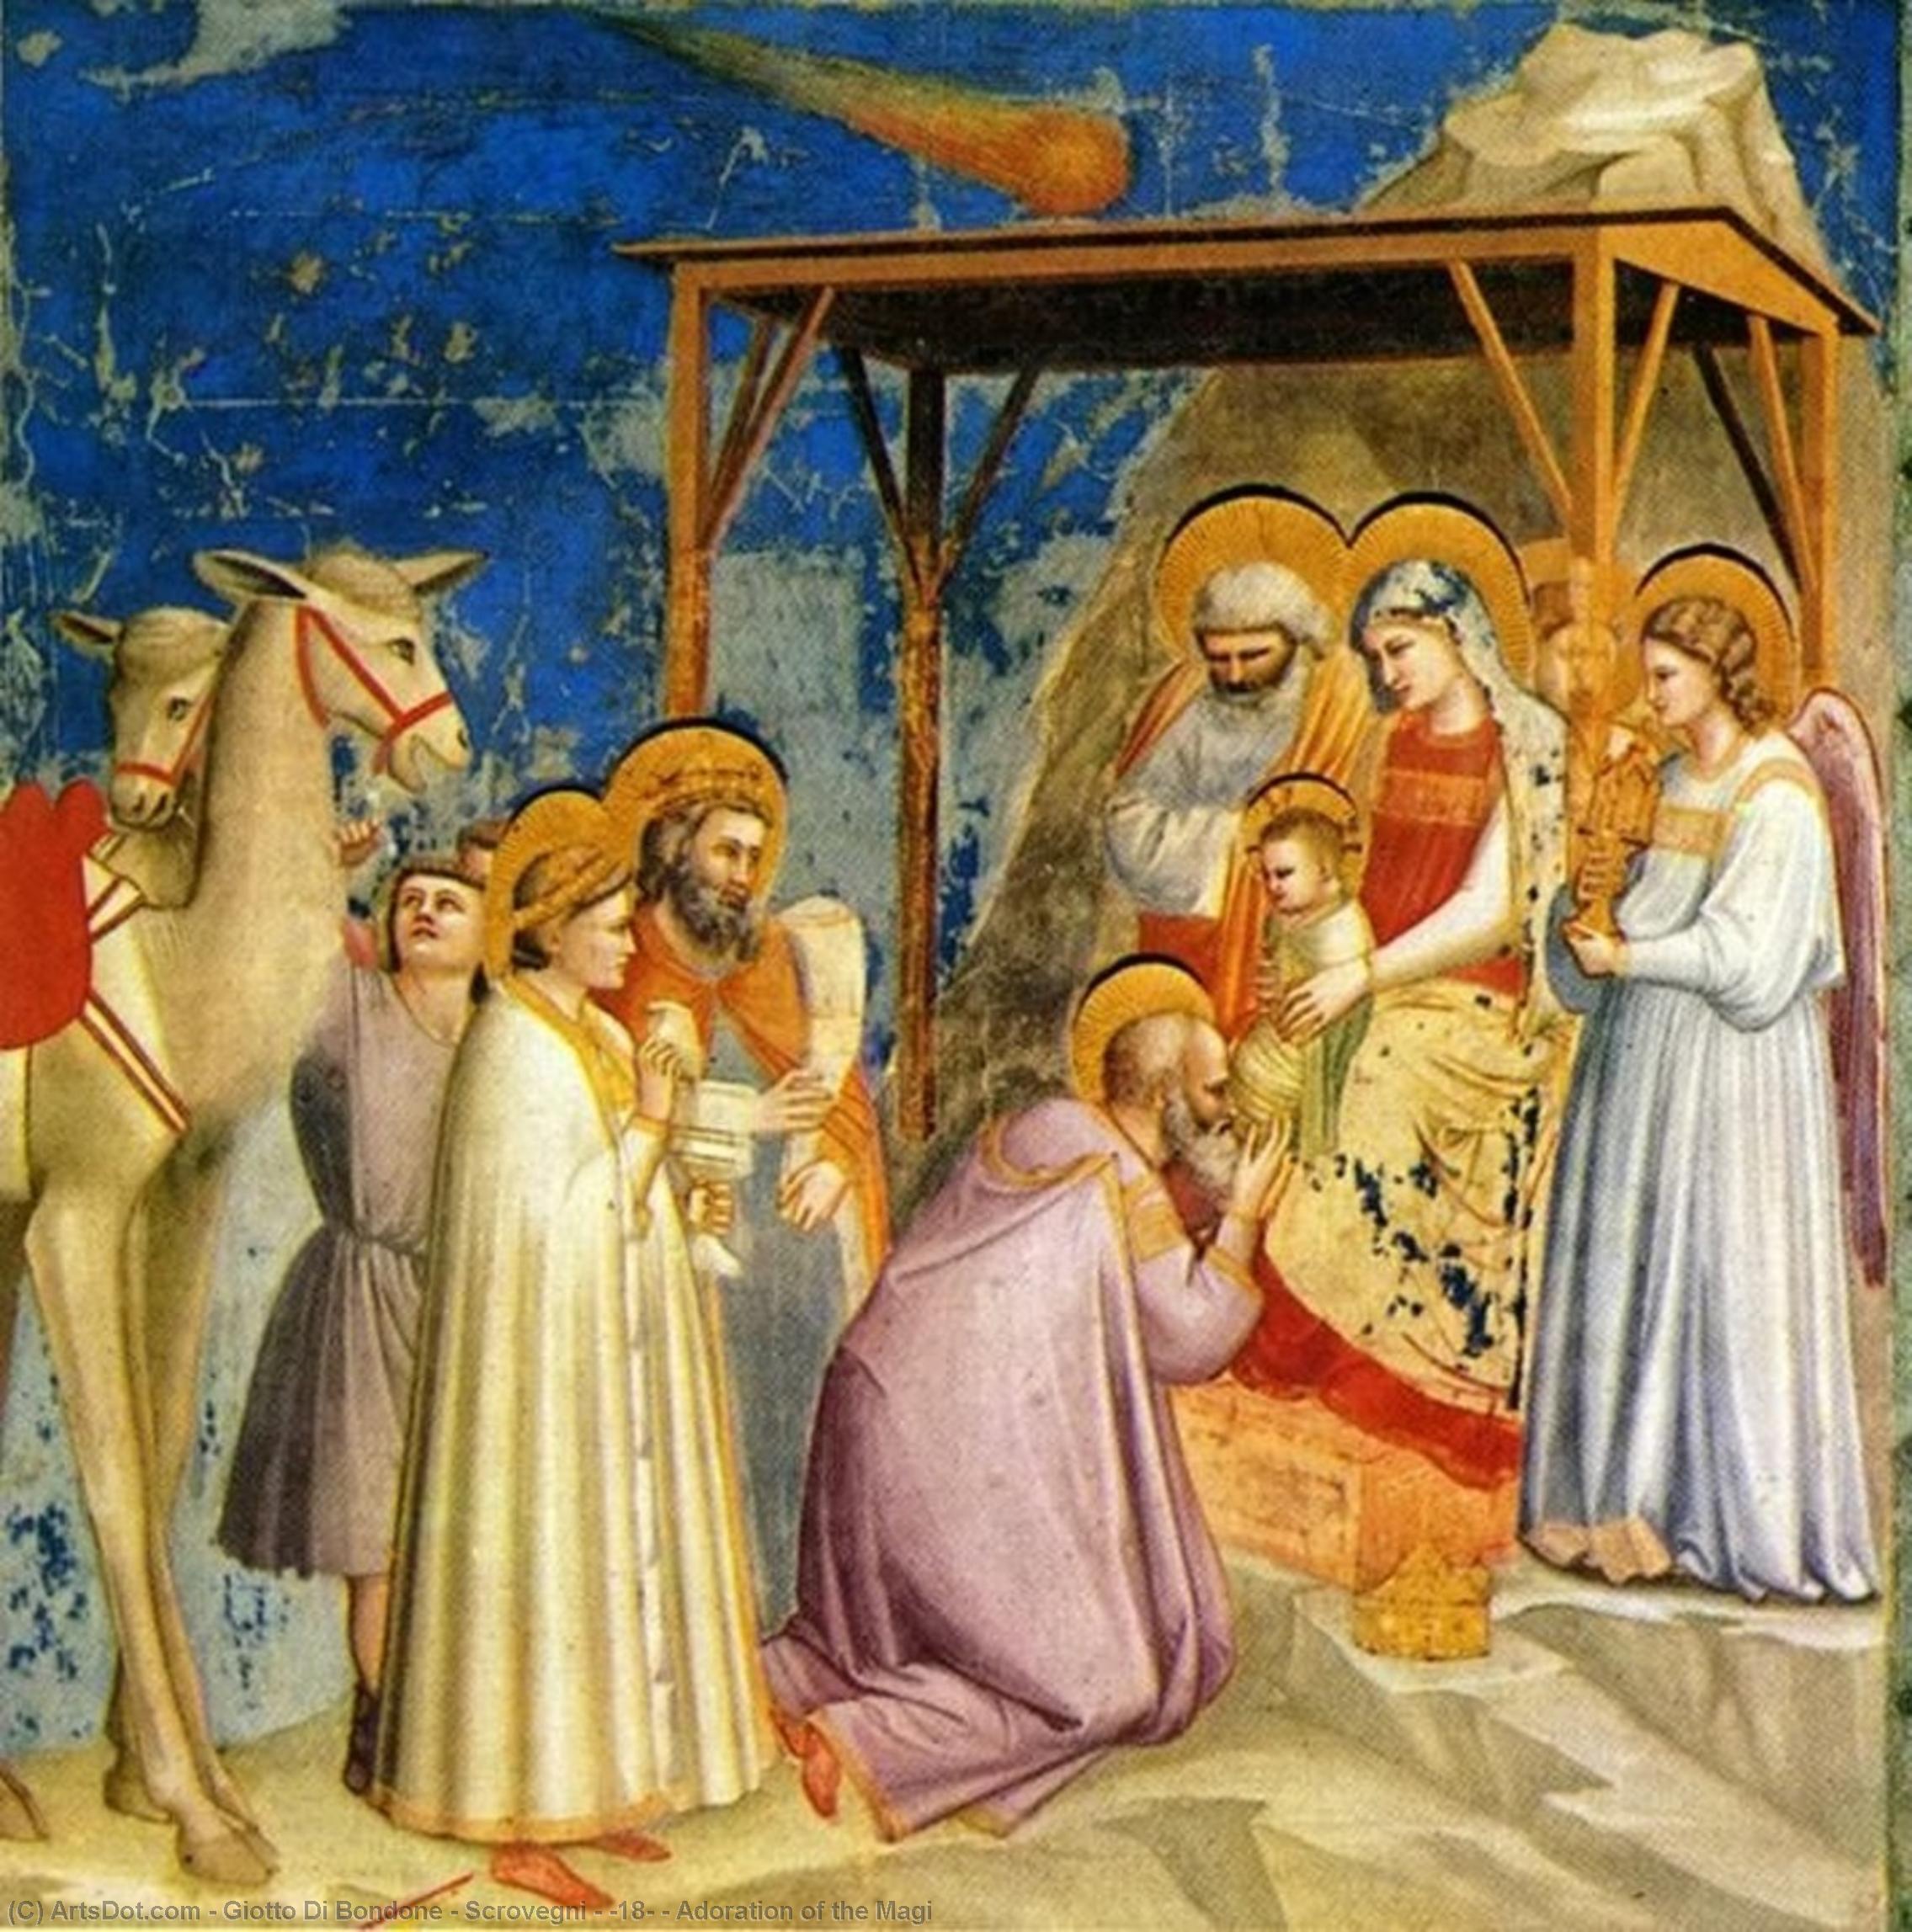 WikiOO.org - Encyclopedia of Fine Arts - Schilderen, Artwork Giotto Di Bondone - Scrovegni - [18] - Adoration of the Magi